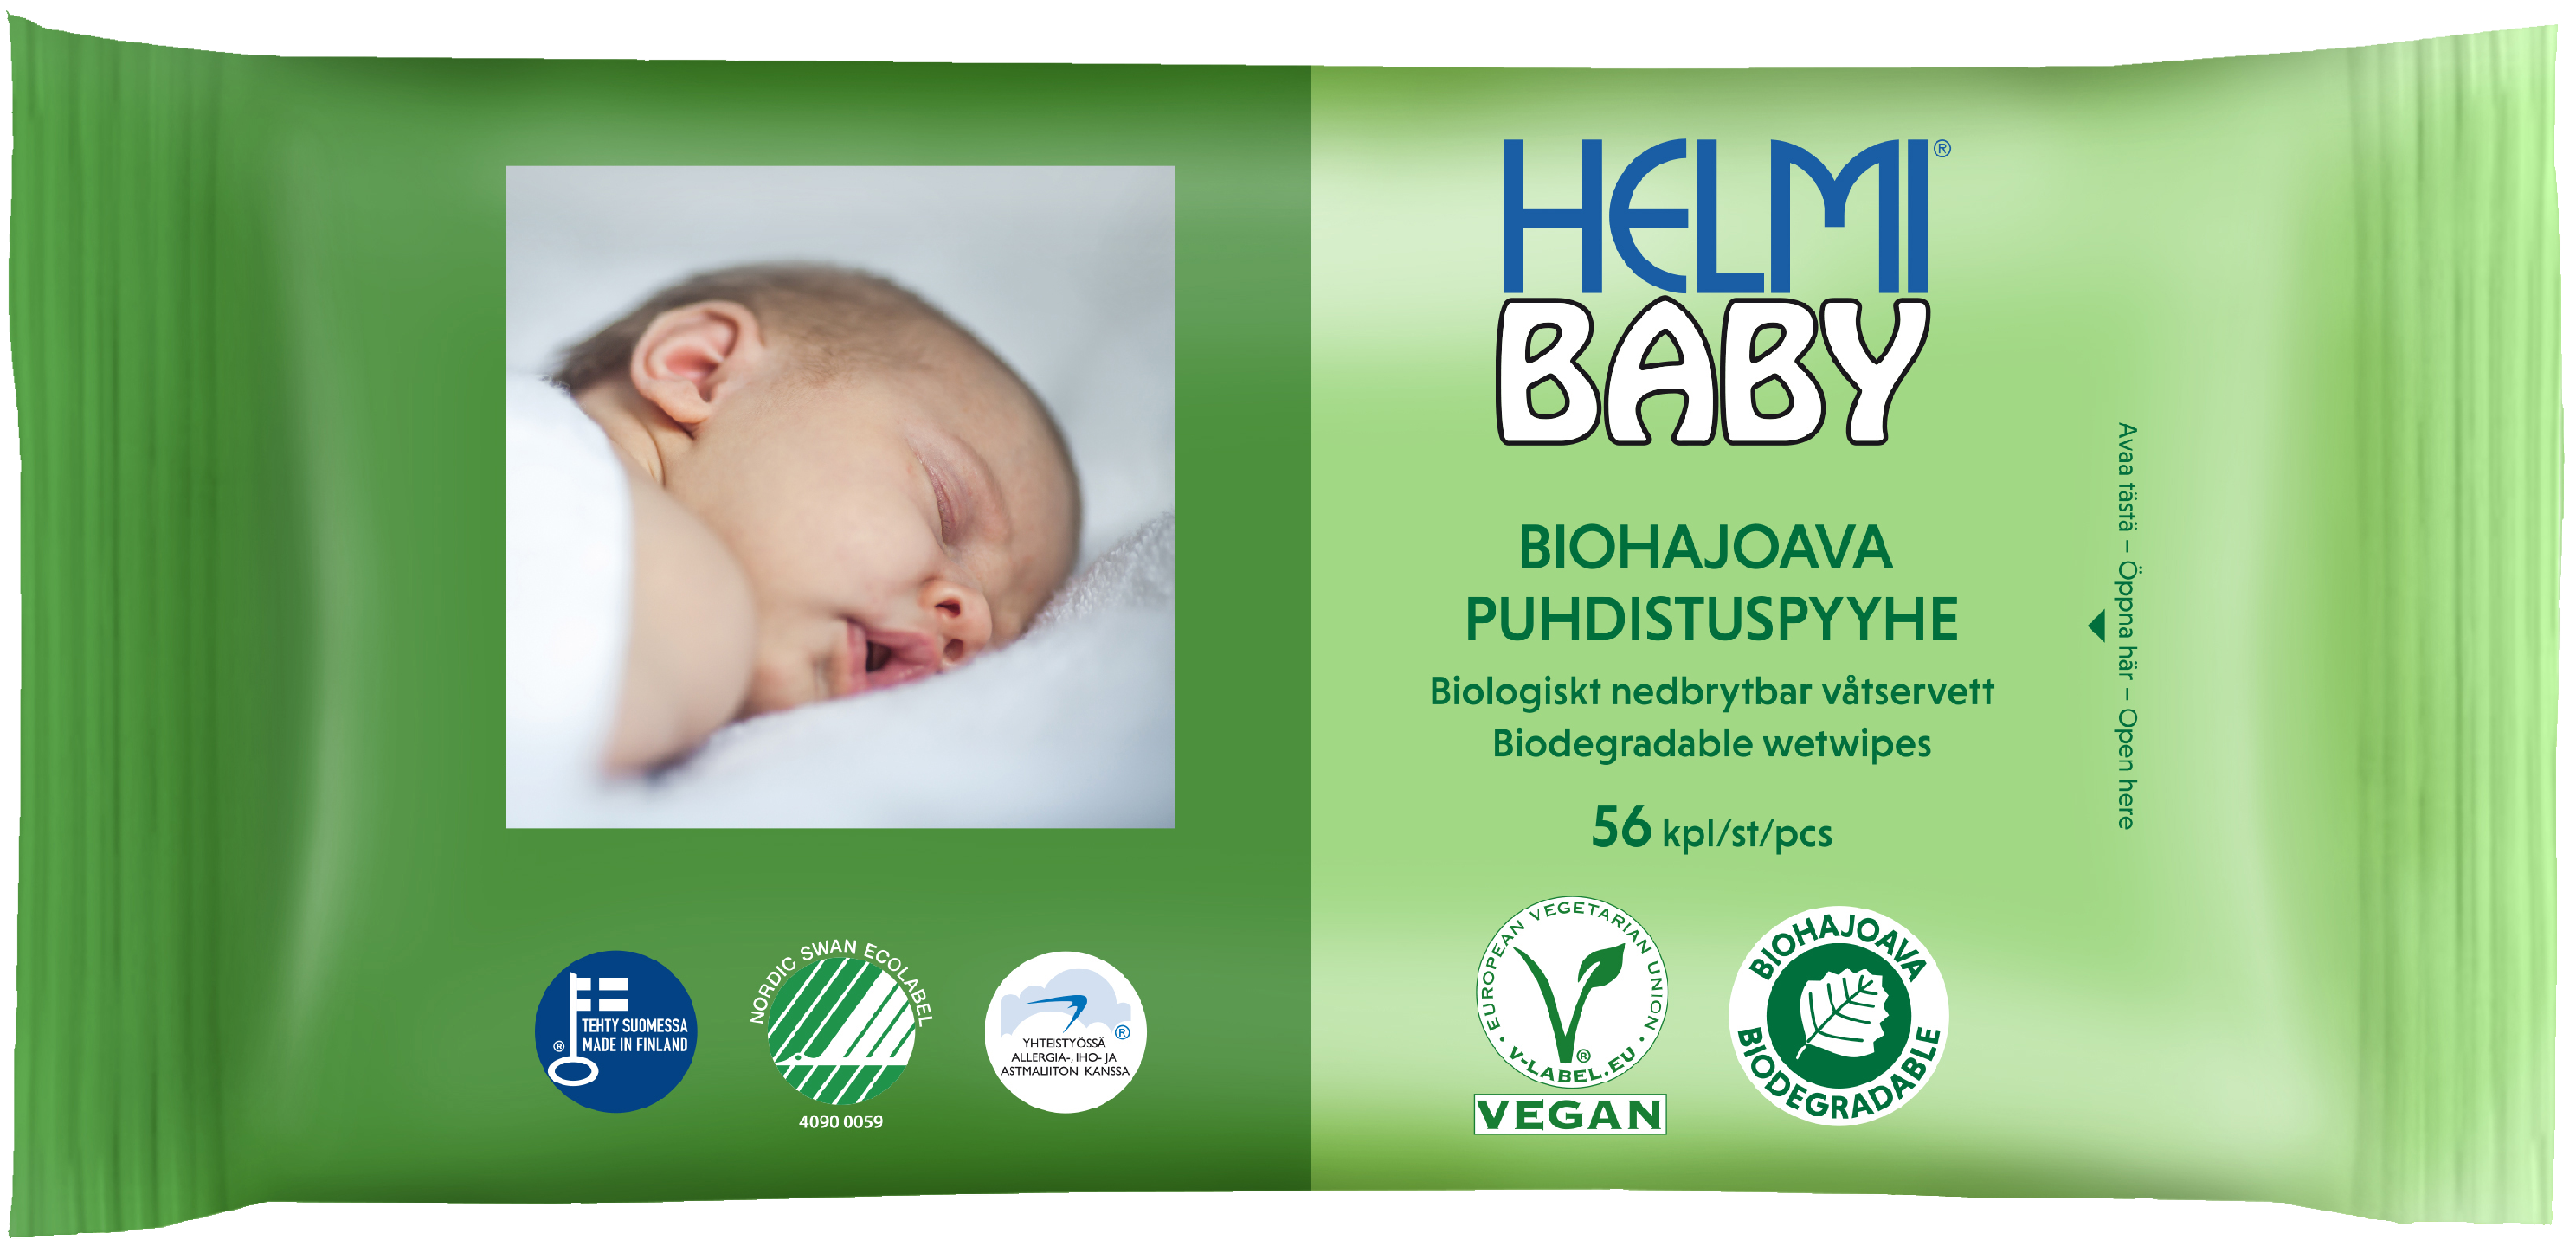 Helmi Baby Biohajoava puhdistuspyyhe 56kpl